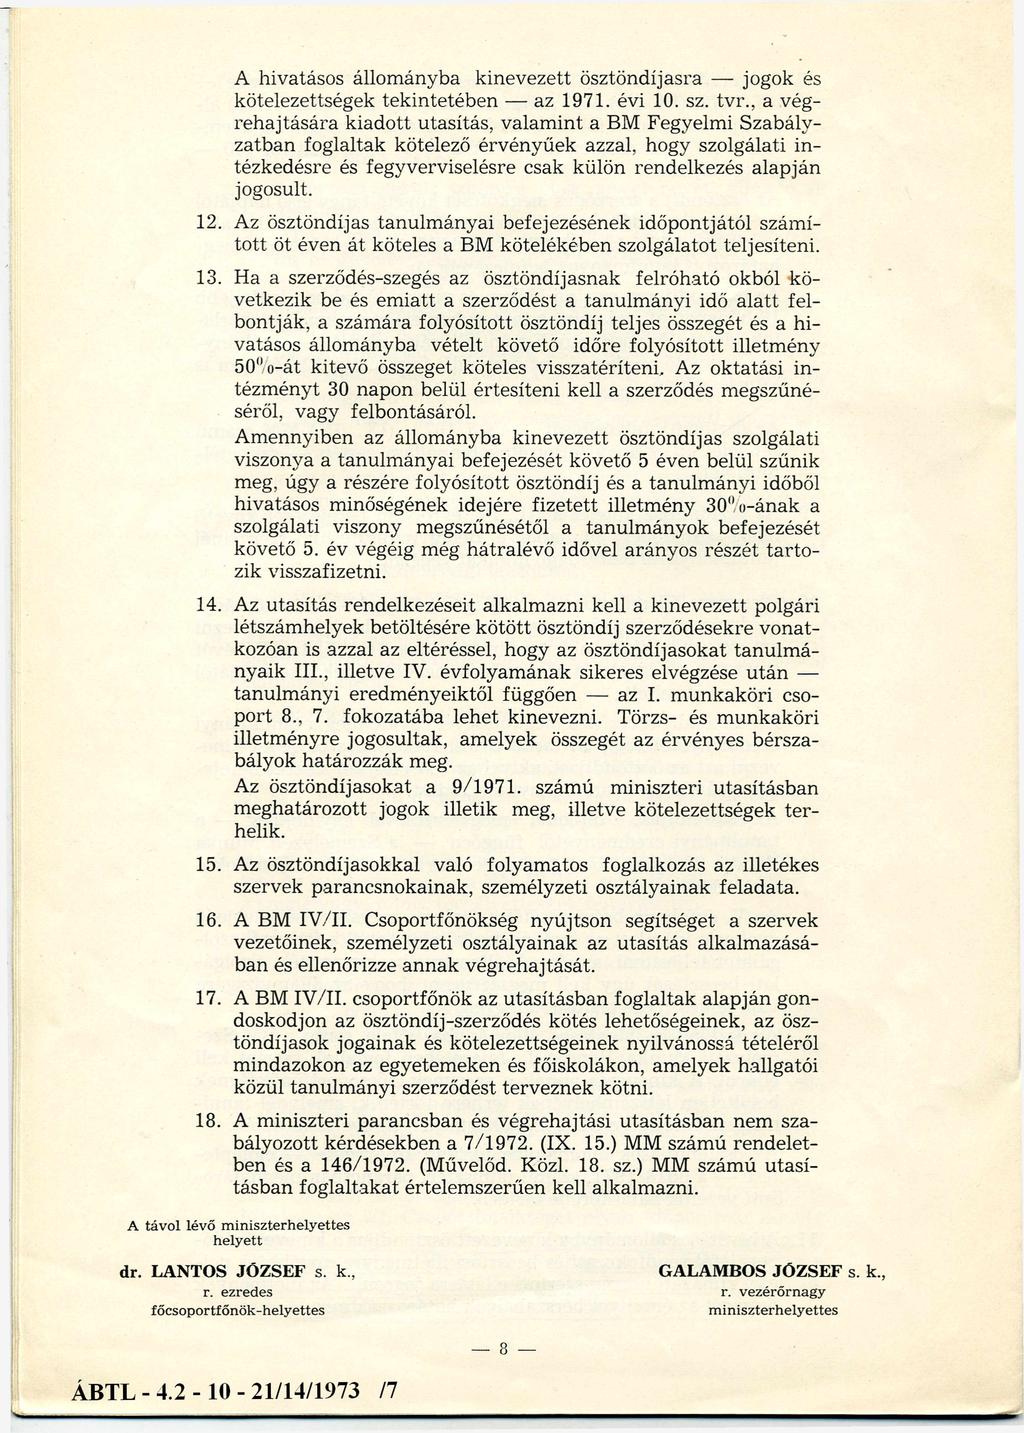 A hivatásos állományba kinevezett ösztöndíjasra jogok és kötelezettségek tekintetében az 1971. évi 10. sz. tvr.